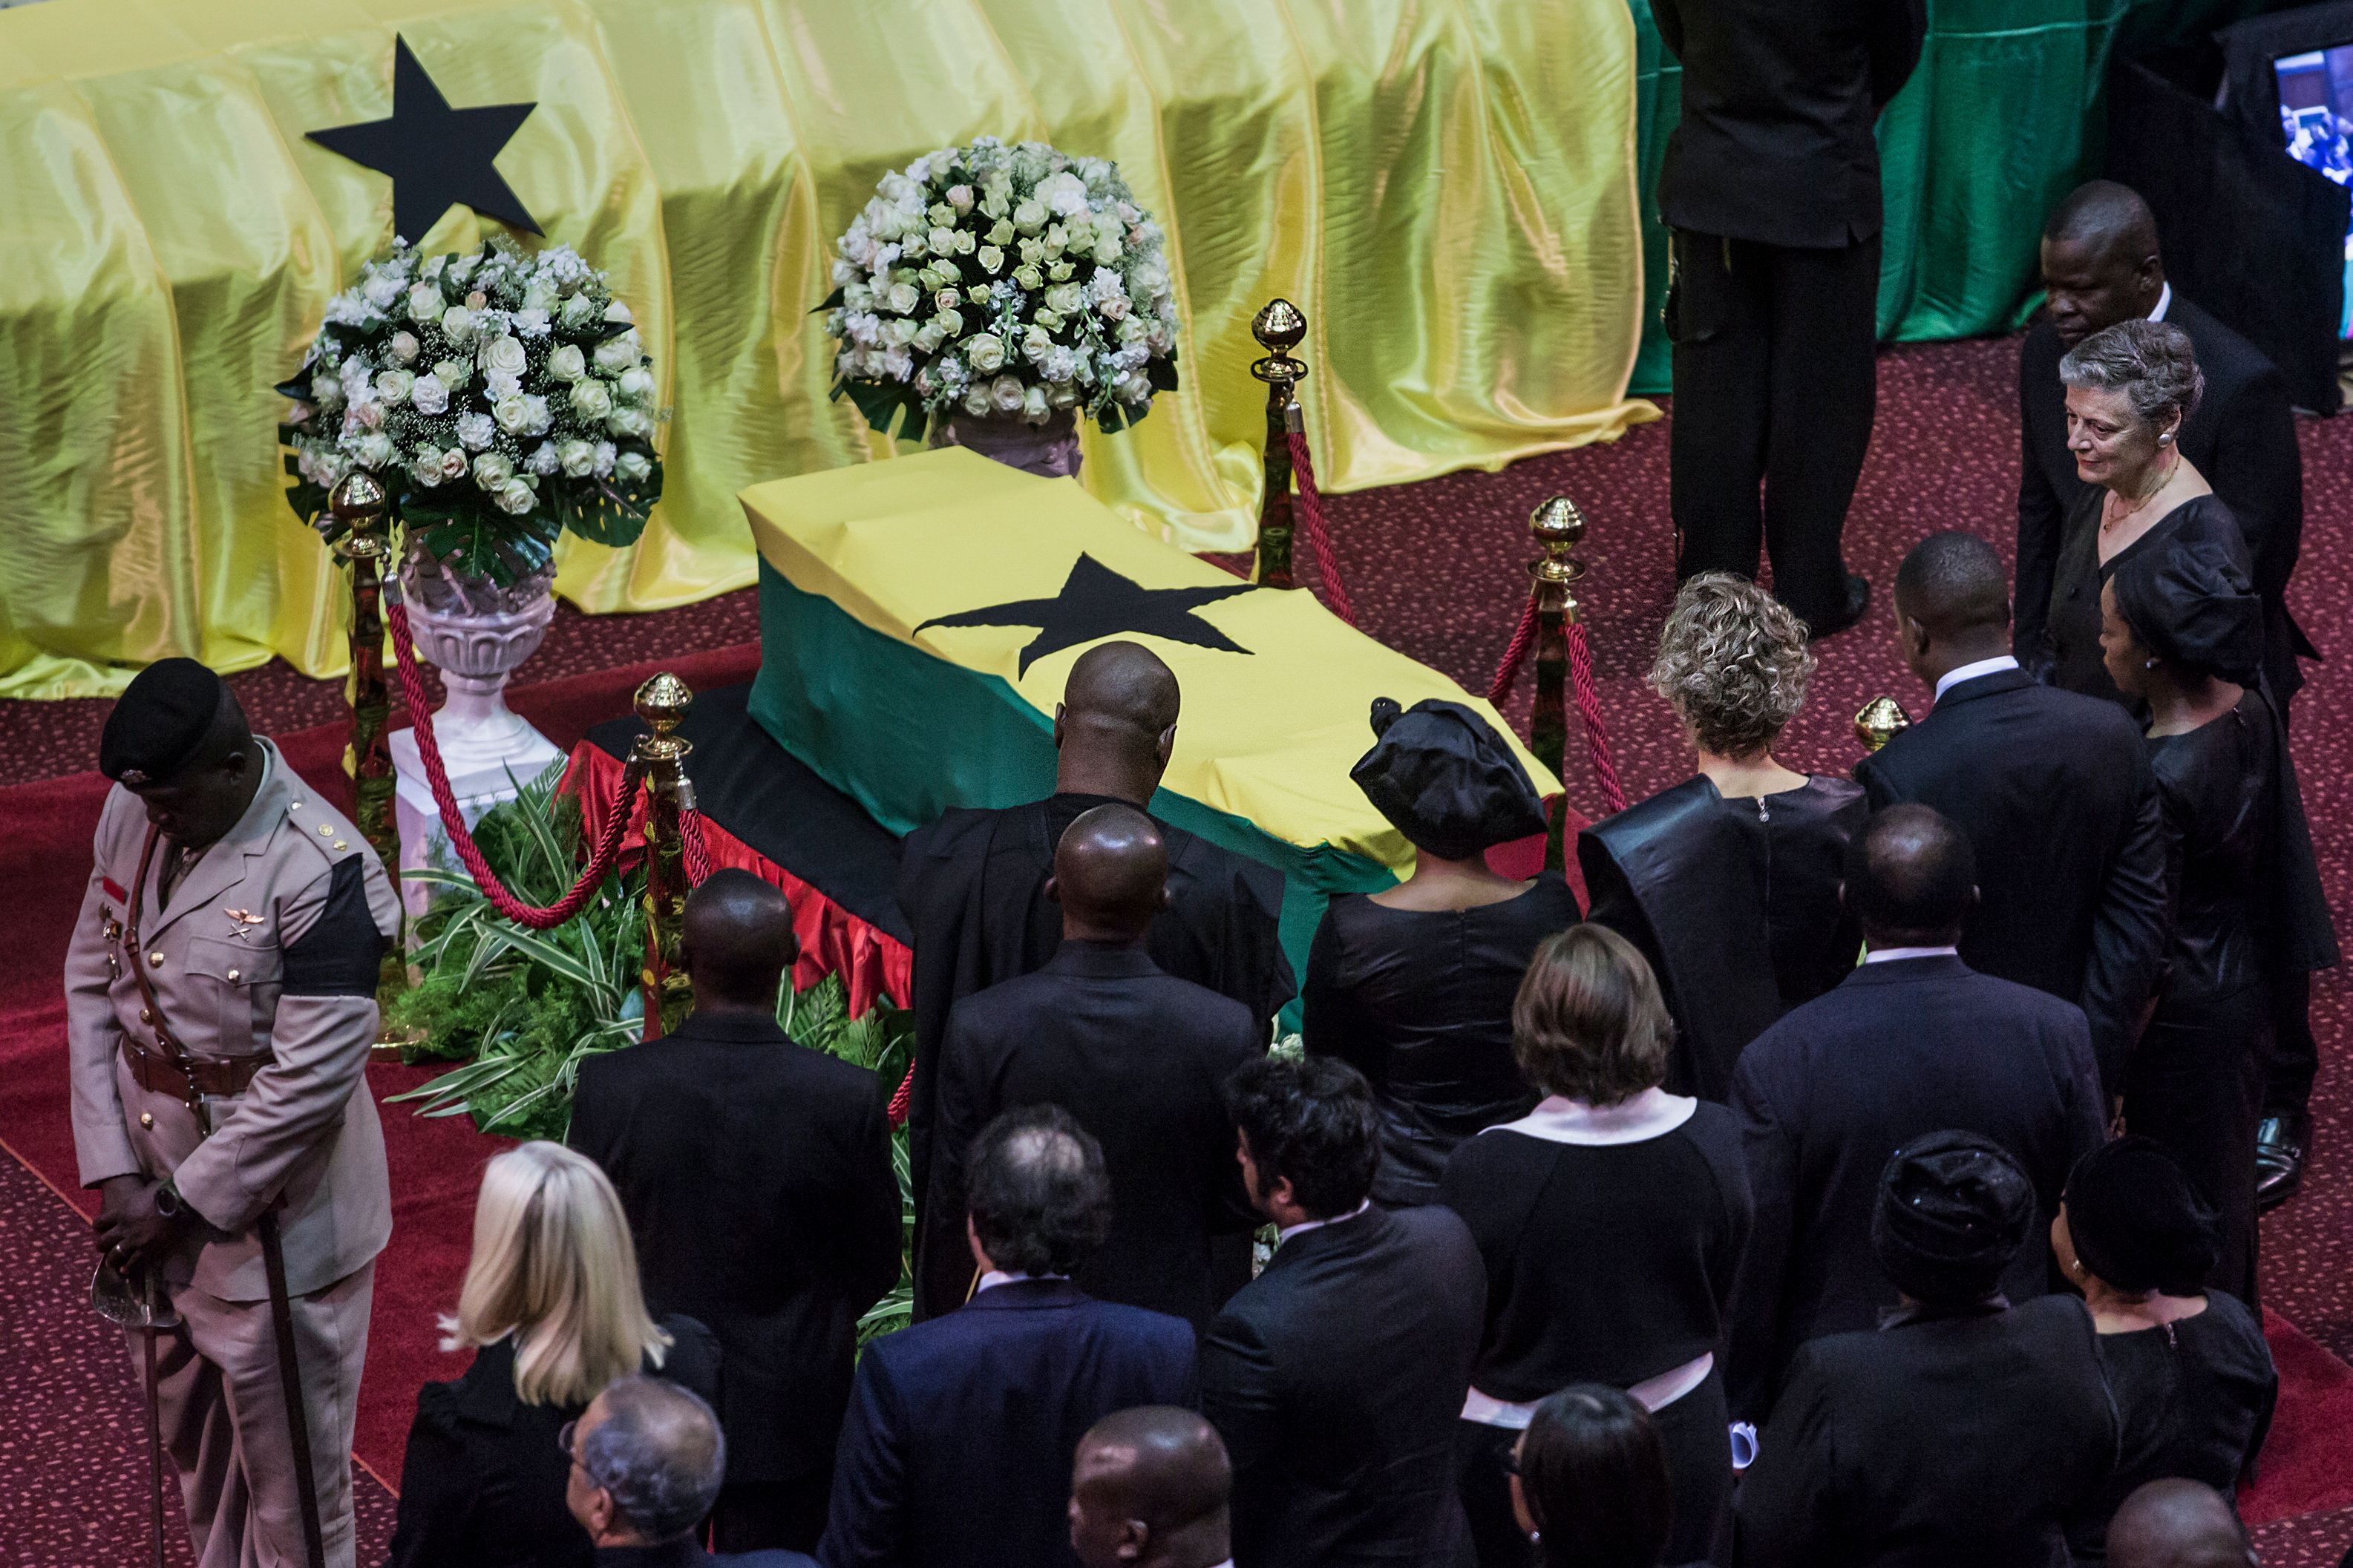 المواطنون الغانيون وشخصيات أخرى يلقون نظرة الوداع على جثمان  عنان